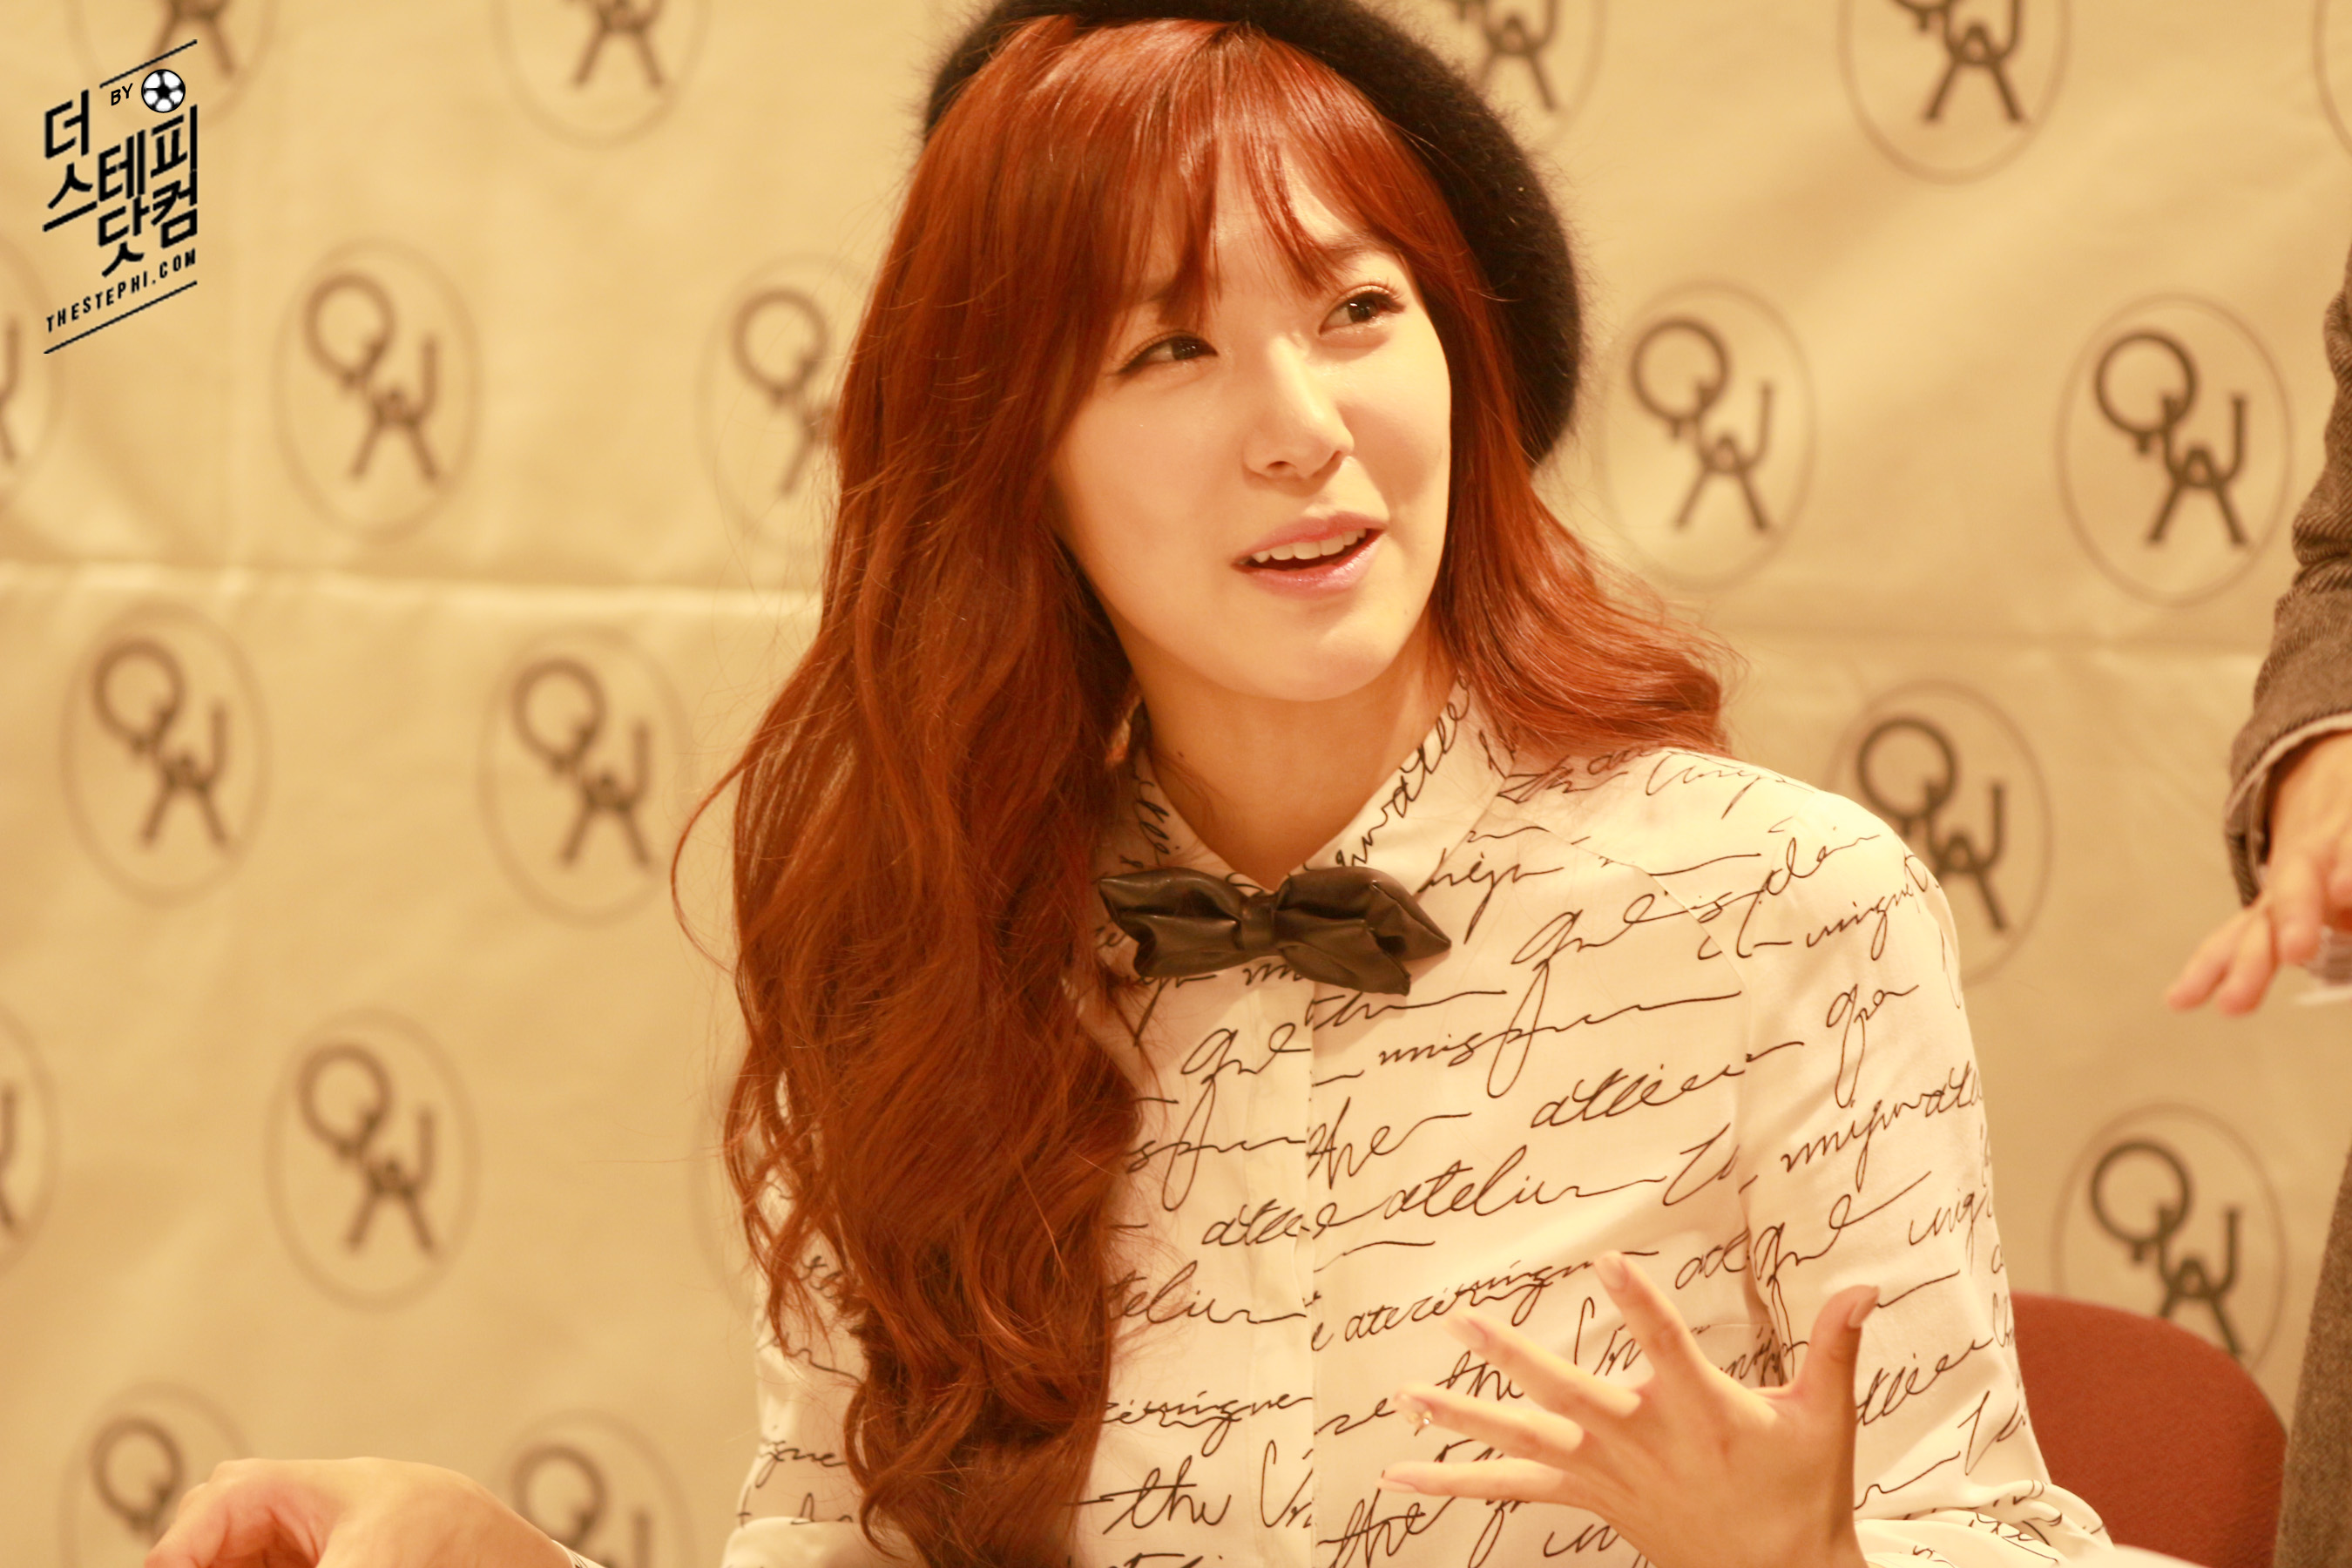 [PIC][07-11-2013]Tiffany xuất hiện tại buổi fansign cho thương hiệu "QUA" vào chiều nay - Page 3 216B5238529C90481147F2